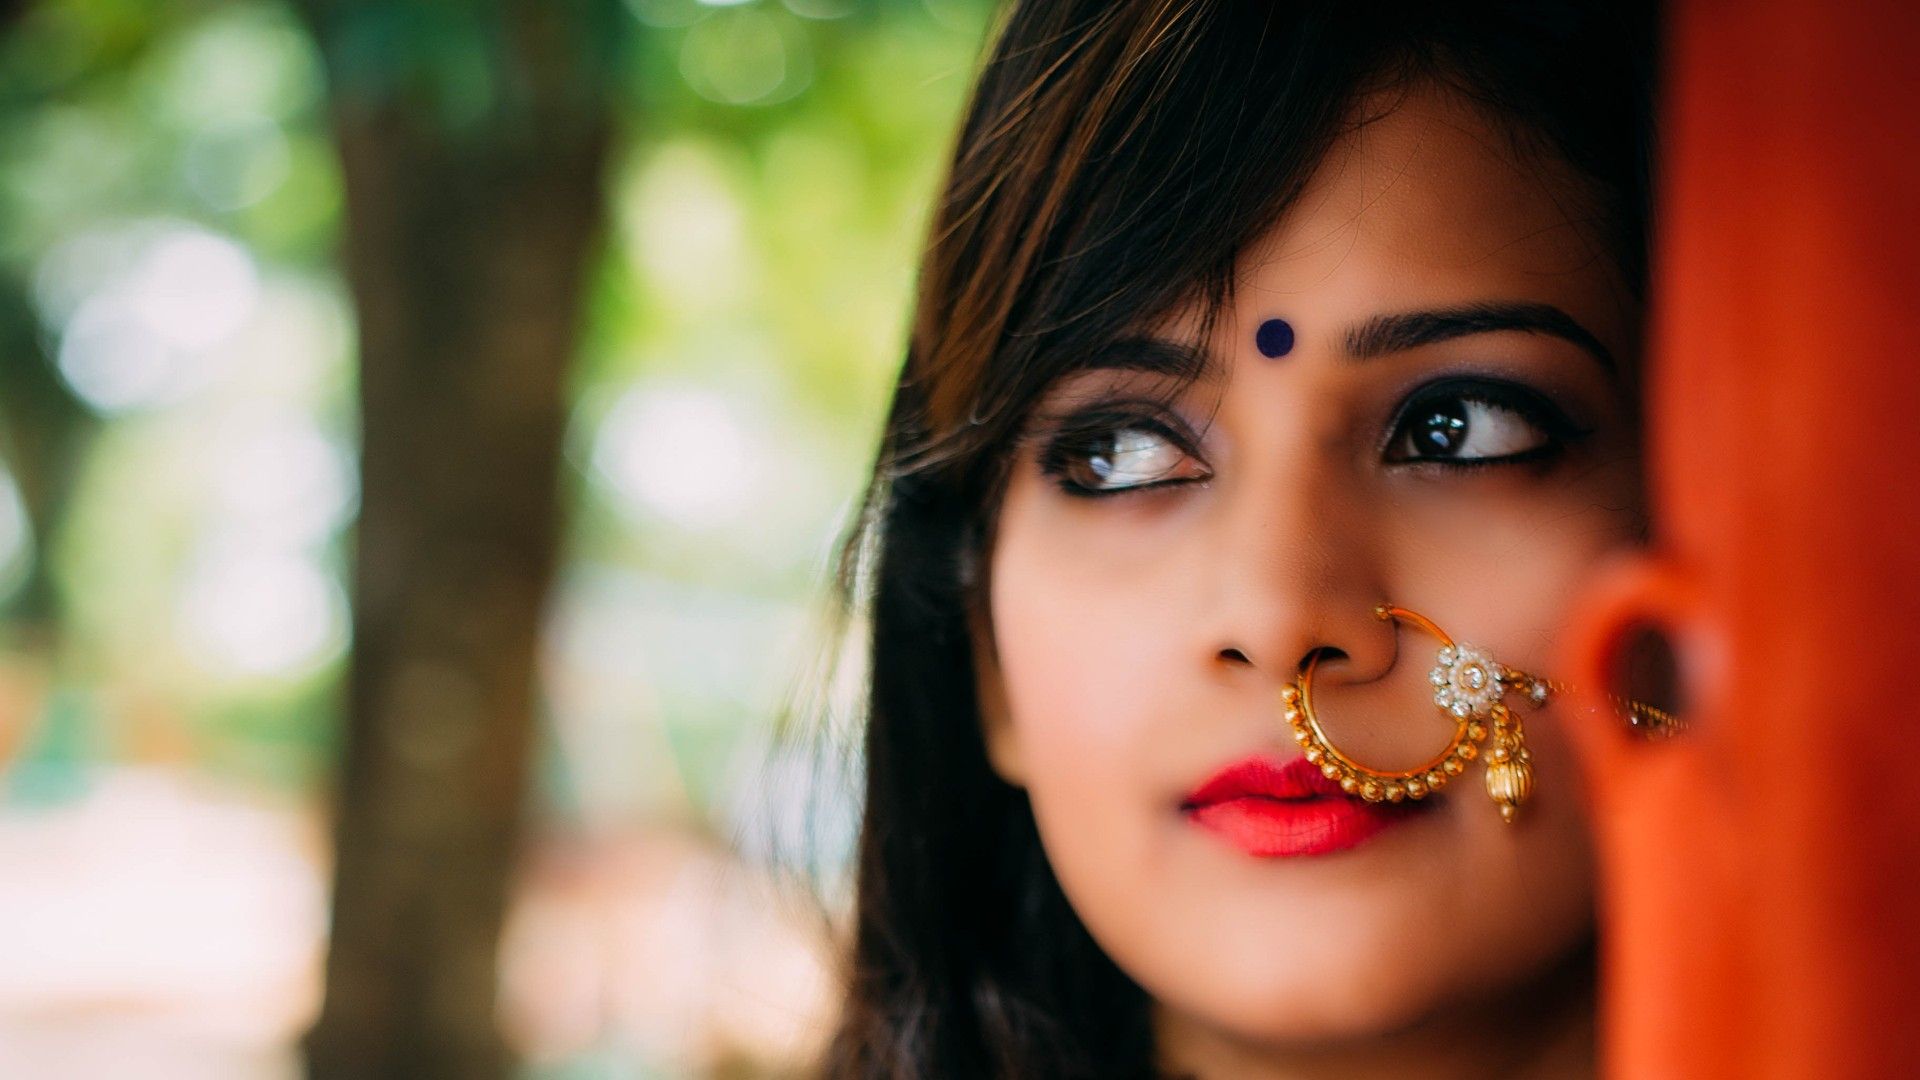 Beautiful Indian Girl Images  Free Download on Freepik